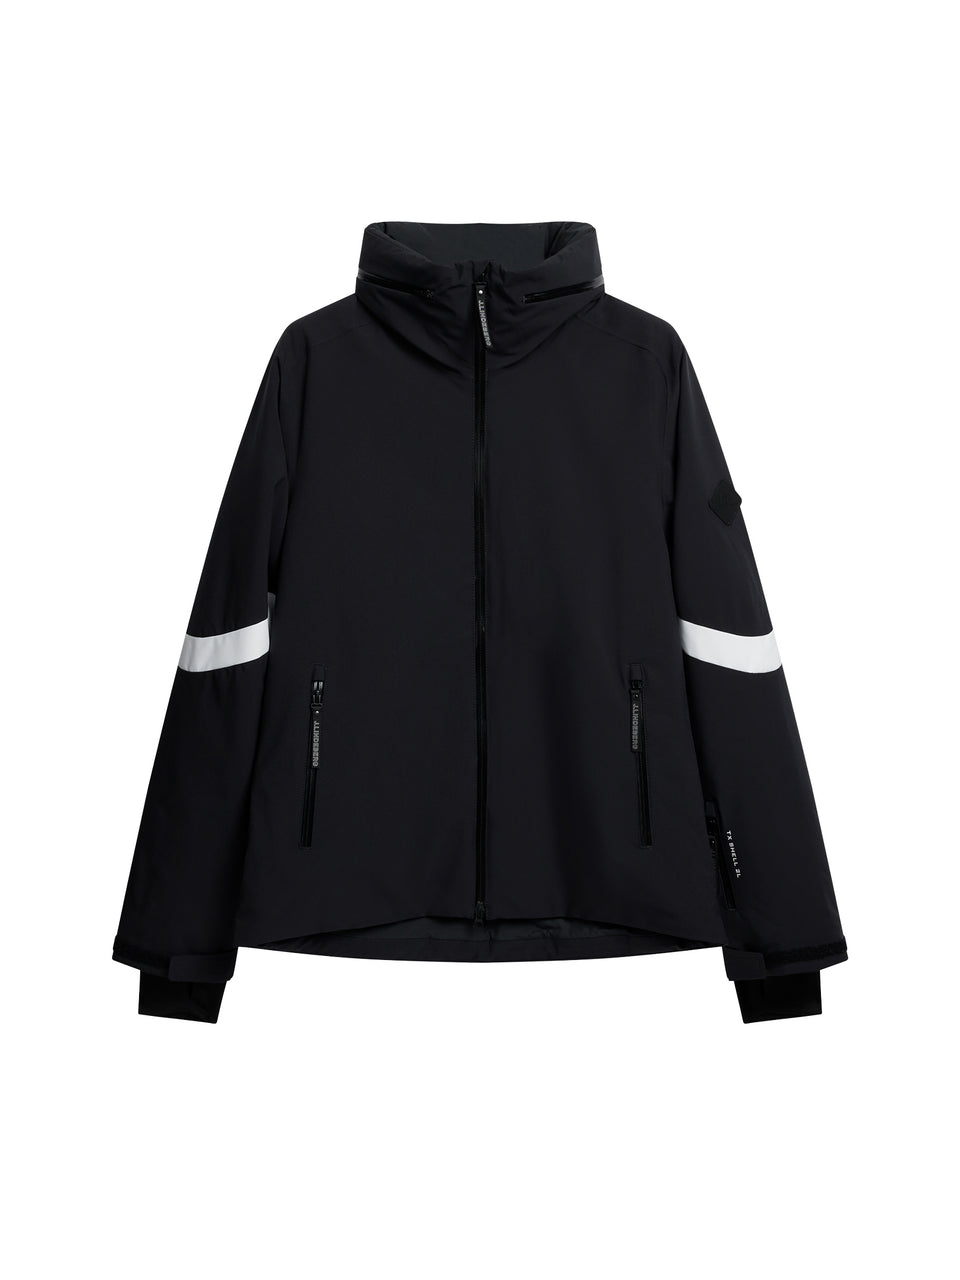 Highlands jacket / Black